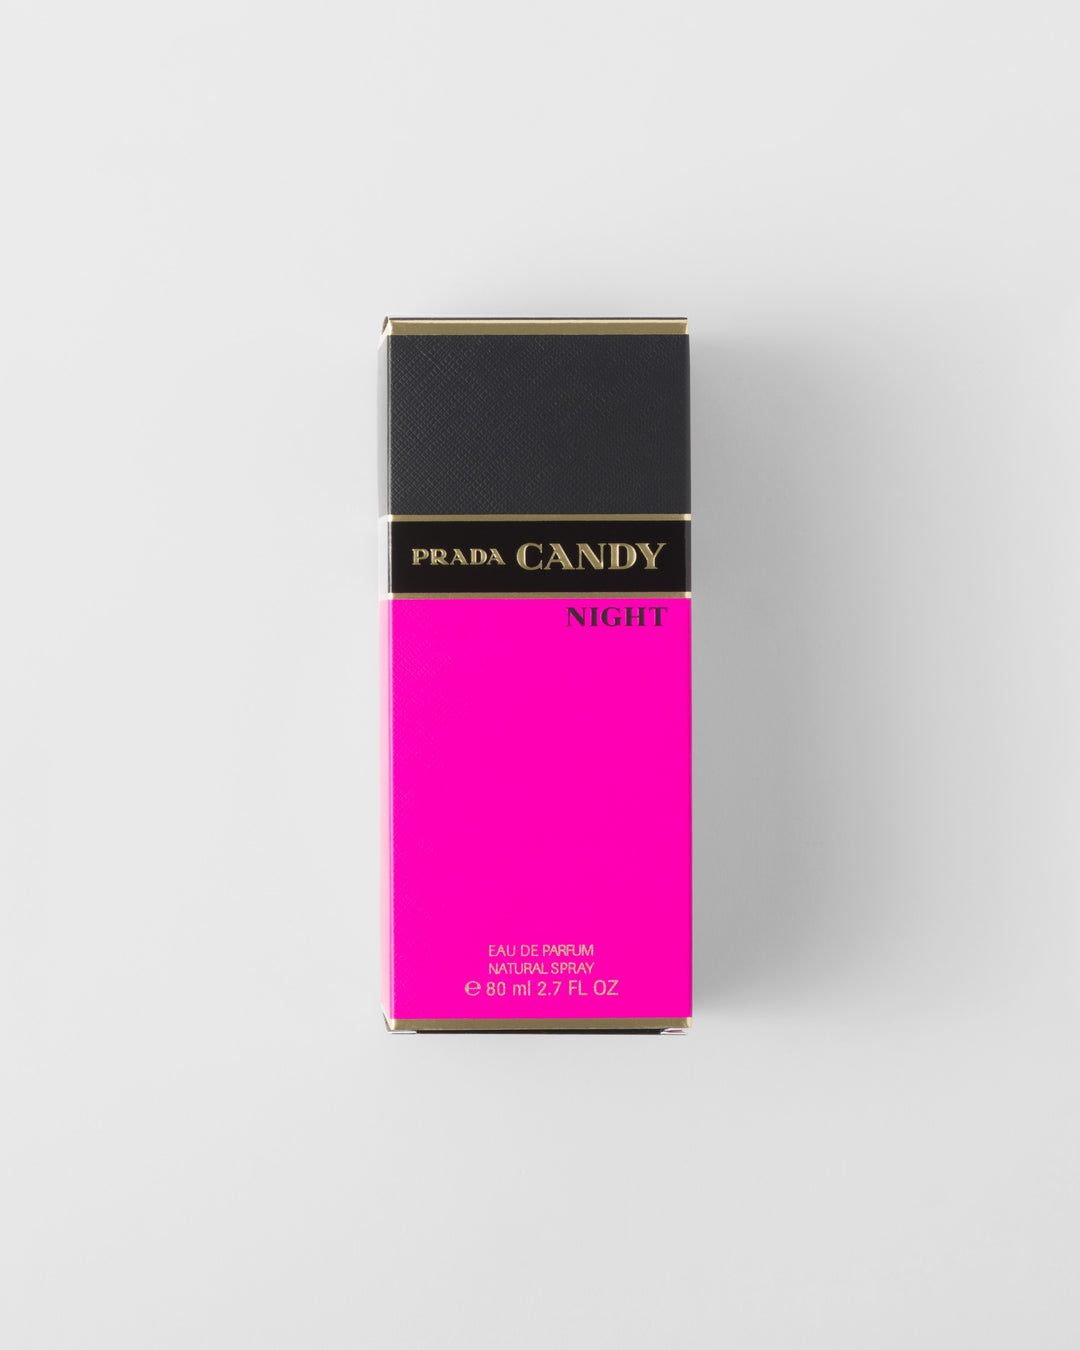 Nước Hoa PRADA Candy Night Eau de Parfum #80 mL